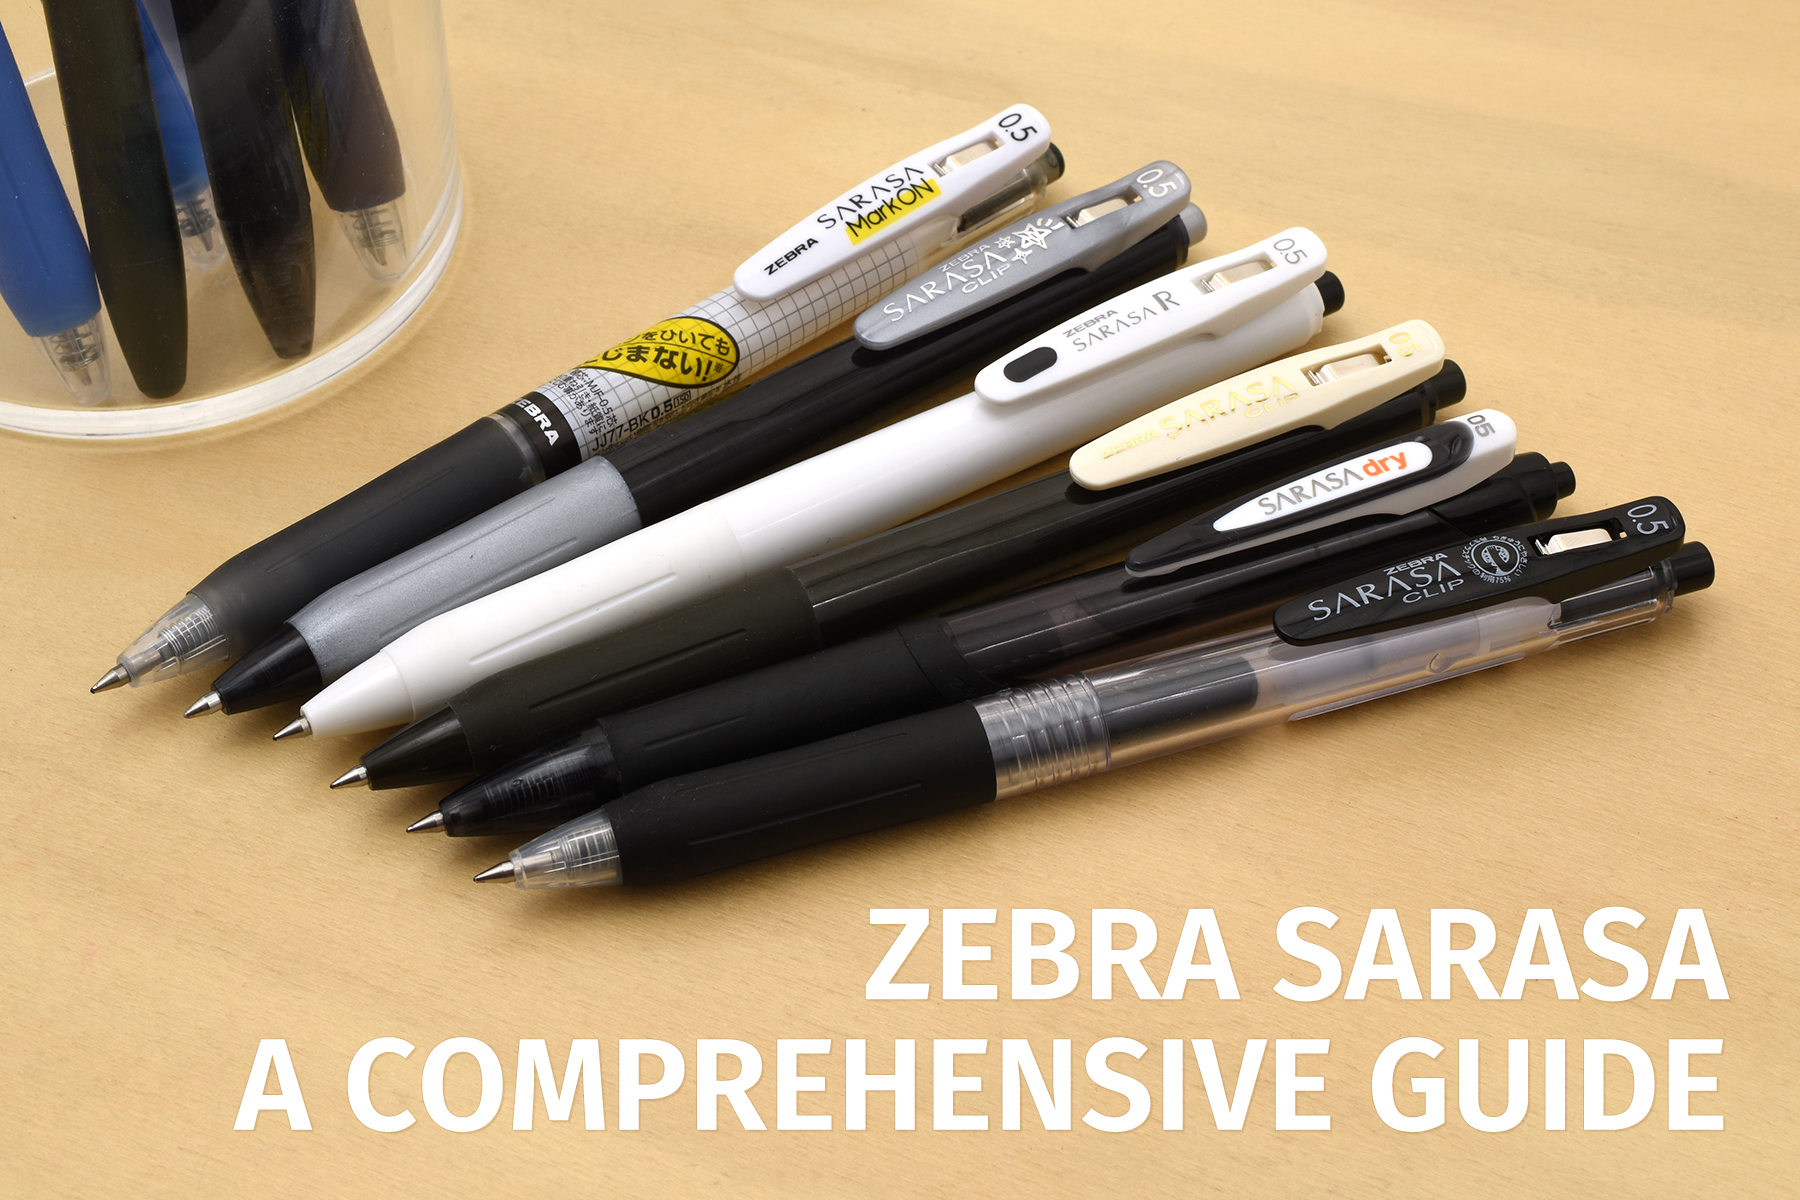 Zebra Sarasa: A Comprehensive Guide